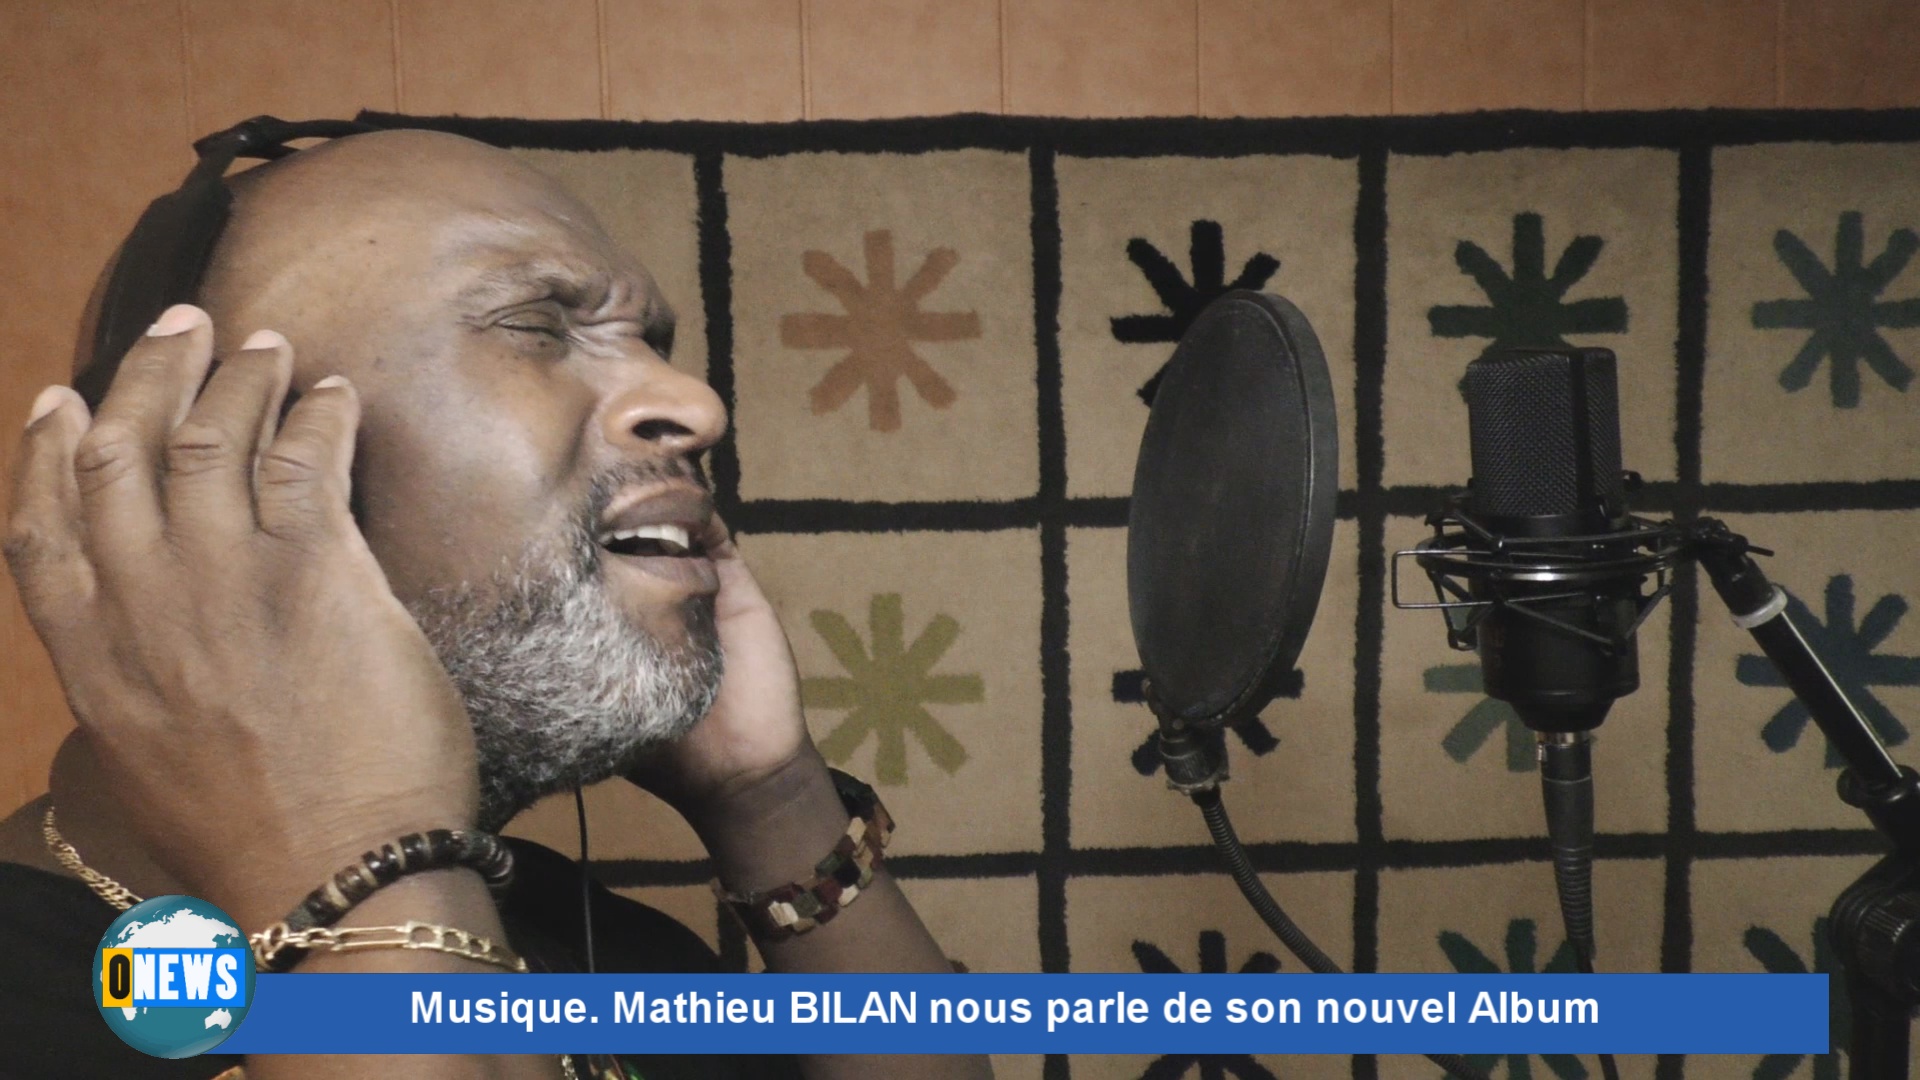 [Vidéo] Onews Musique. Mathieu BILAN nous parle de son nouvel Album